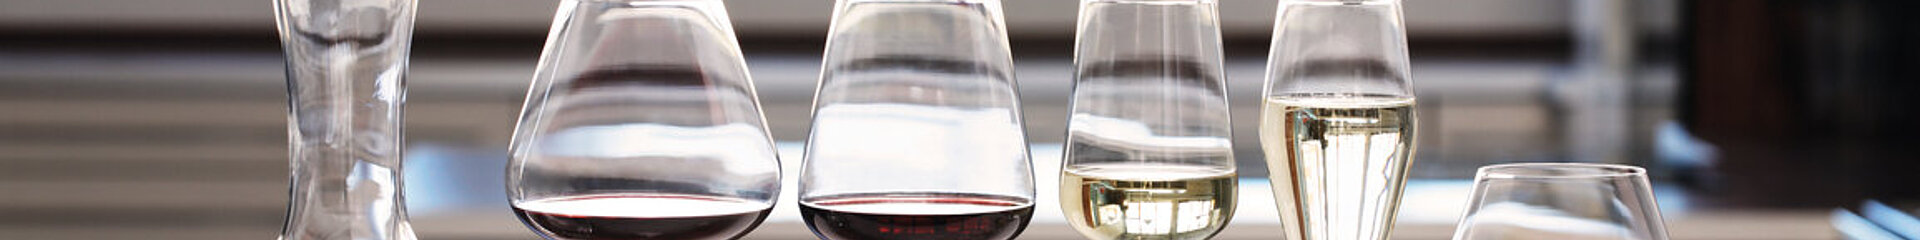 Čaša za vino Bordeaux, Hybrid - Spiegelau